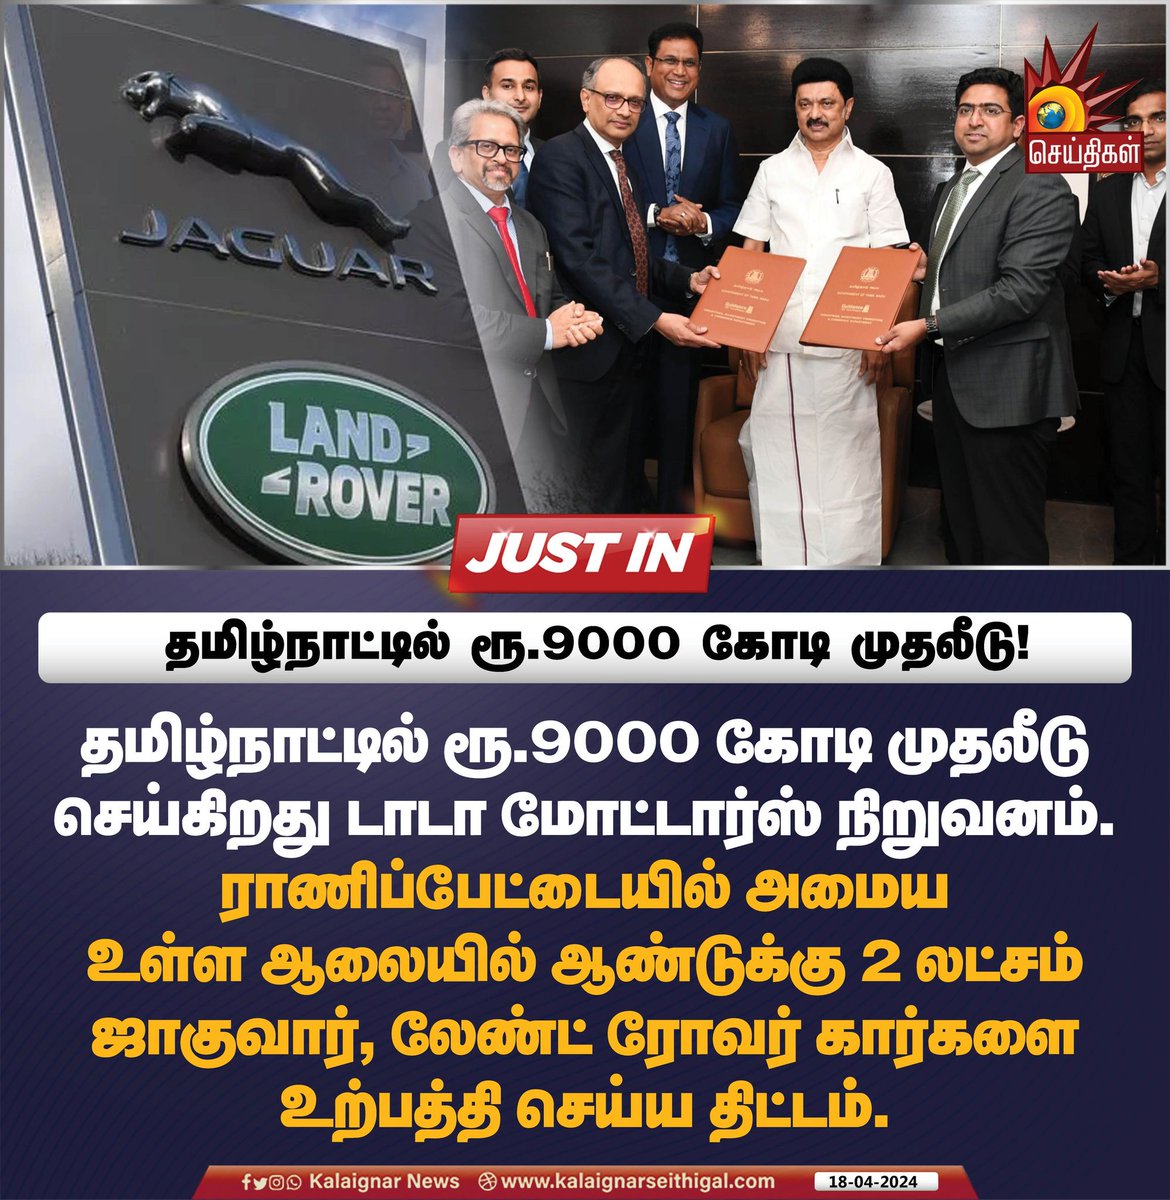 தமிழ்நாட்டில் ரூ.9000 கோடி முதலீடு!

#TamilNadu #CMMKStalin #TataMotors #KalaignarSeithigal